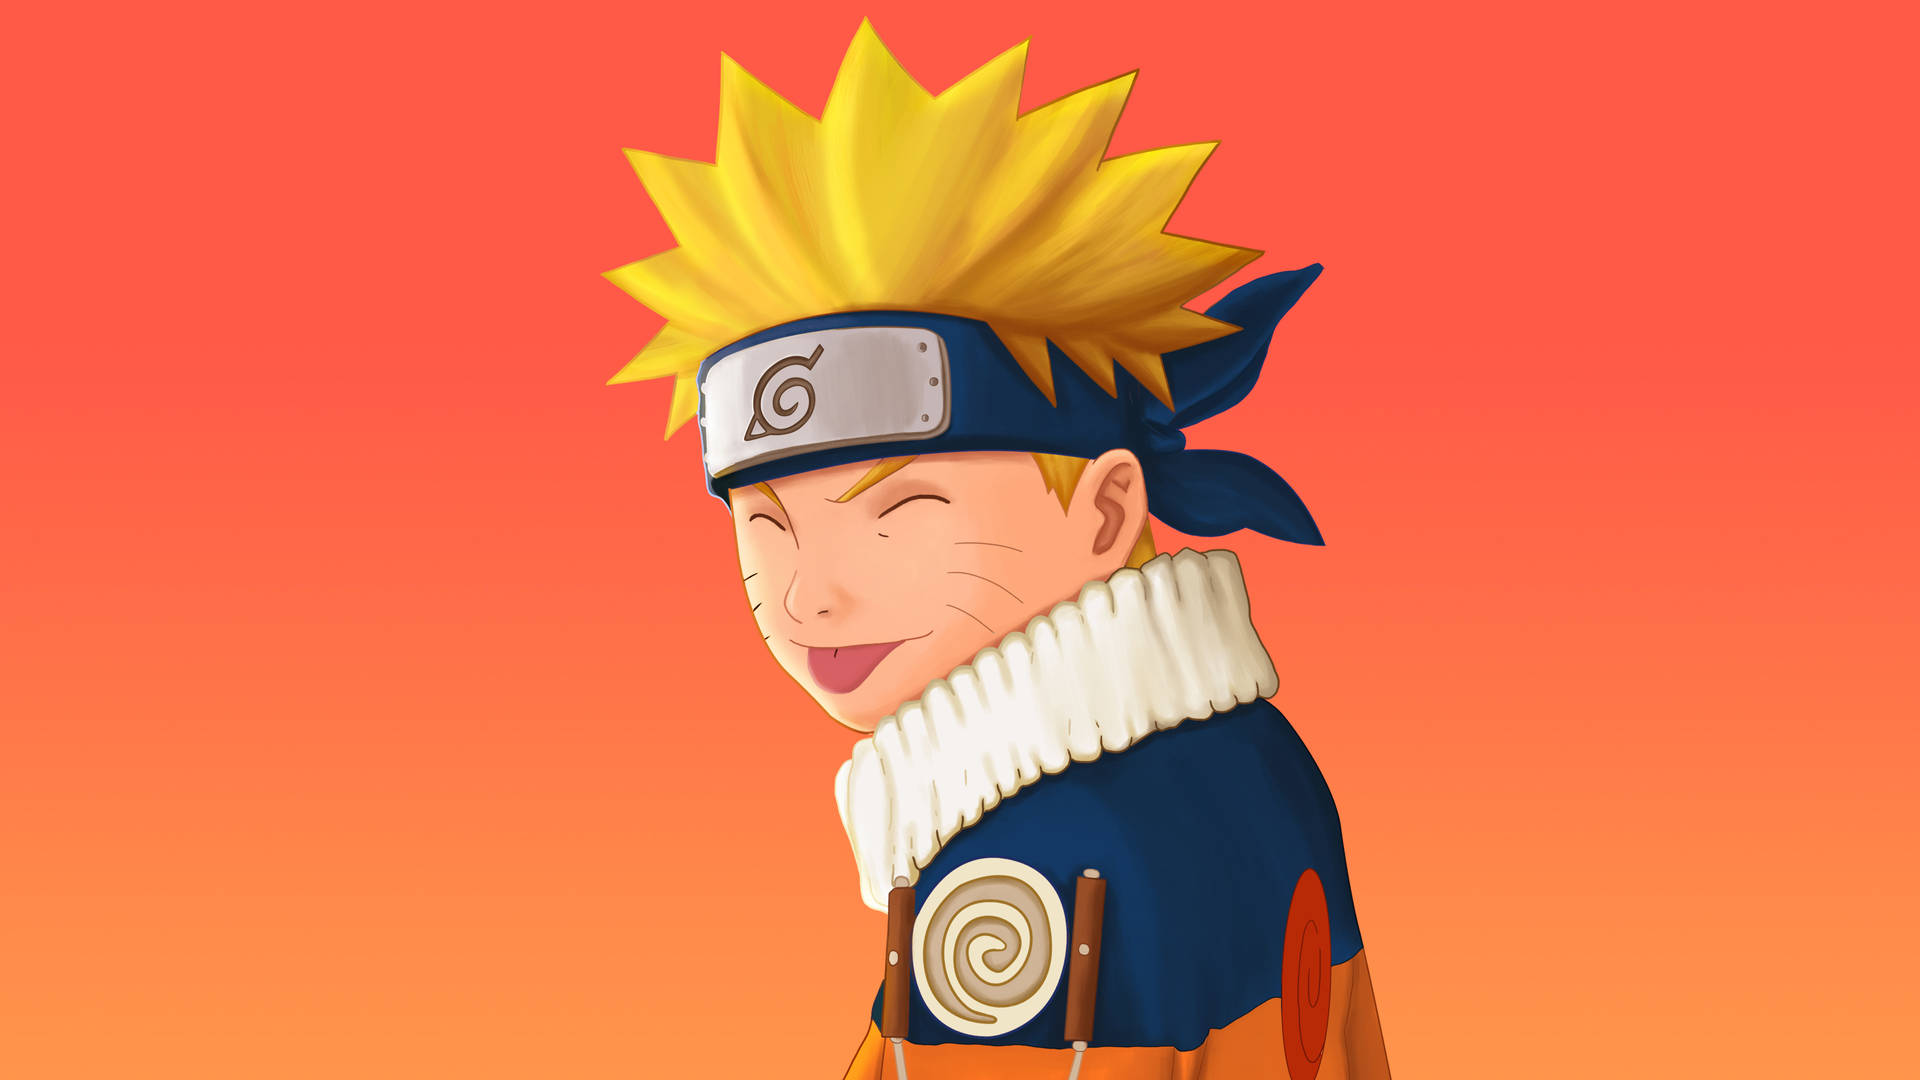 Naruto: Những fan của Naruto đừng bao giờ bỏ lỡ bức ảnh mới nhất về anh chàng phong cách ninja này. Hãy xem và cảm nhận đầy sức mạnh của Naruto nhé!